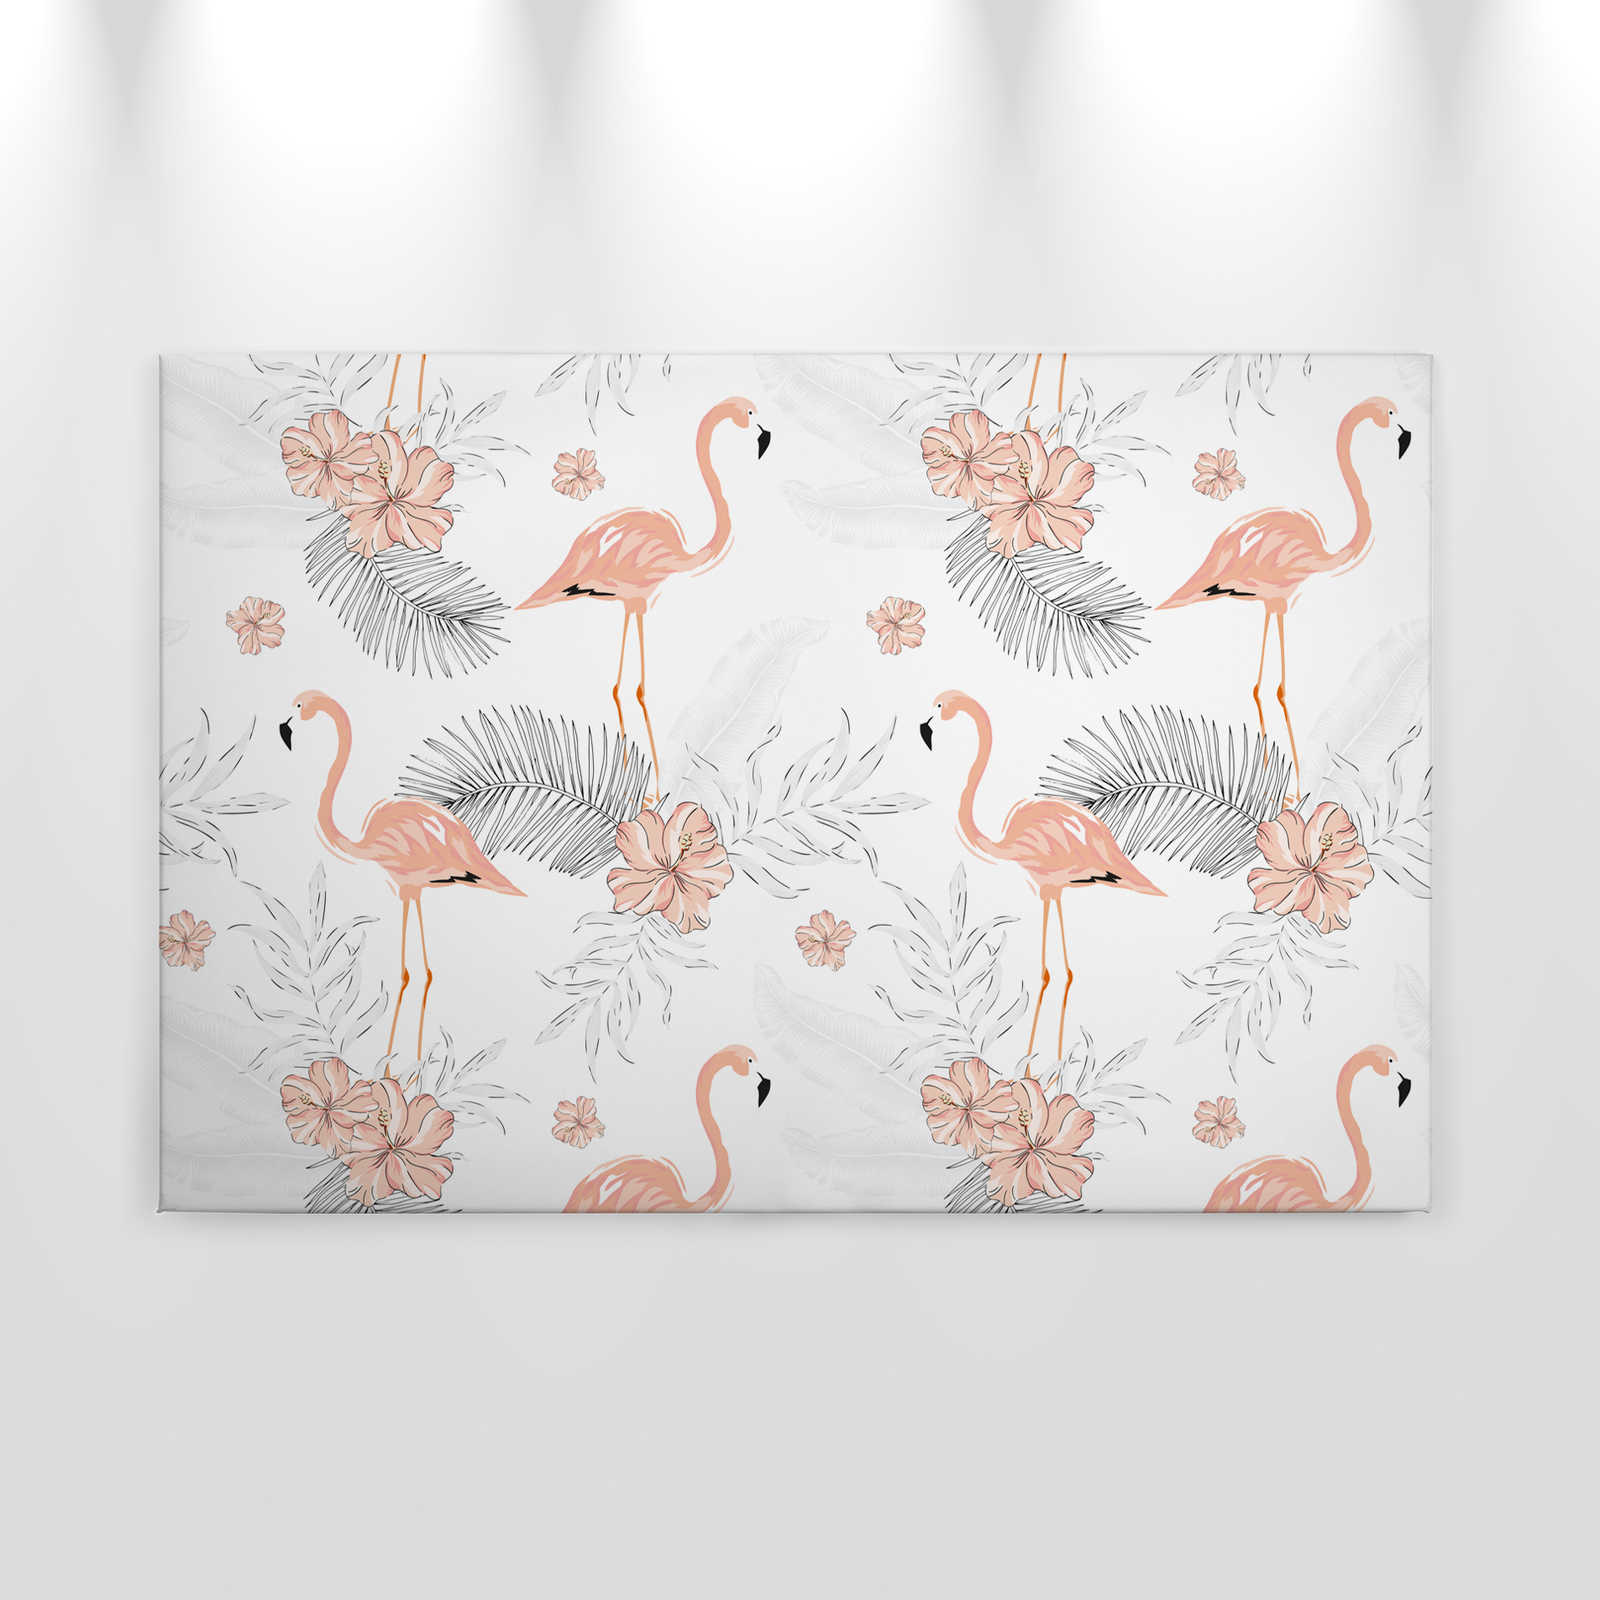             Canvas Flamingos & Tropical Plants - 0.90 m x 0.60 m
        